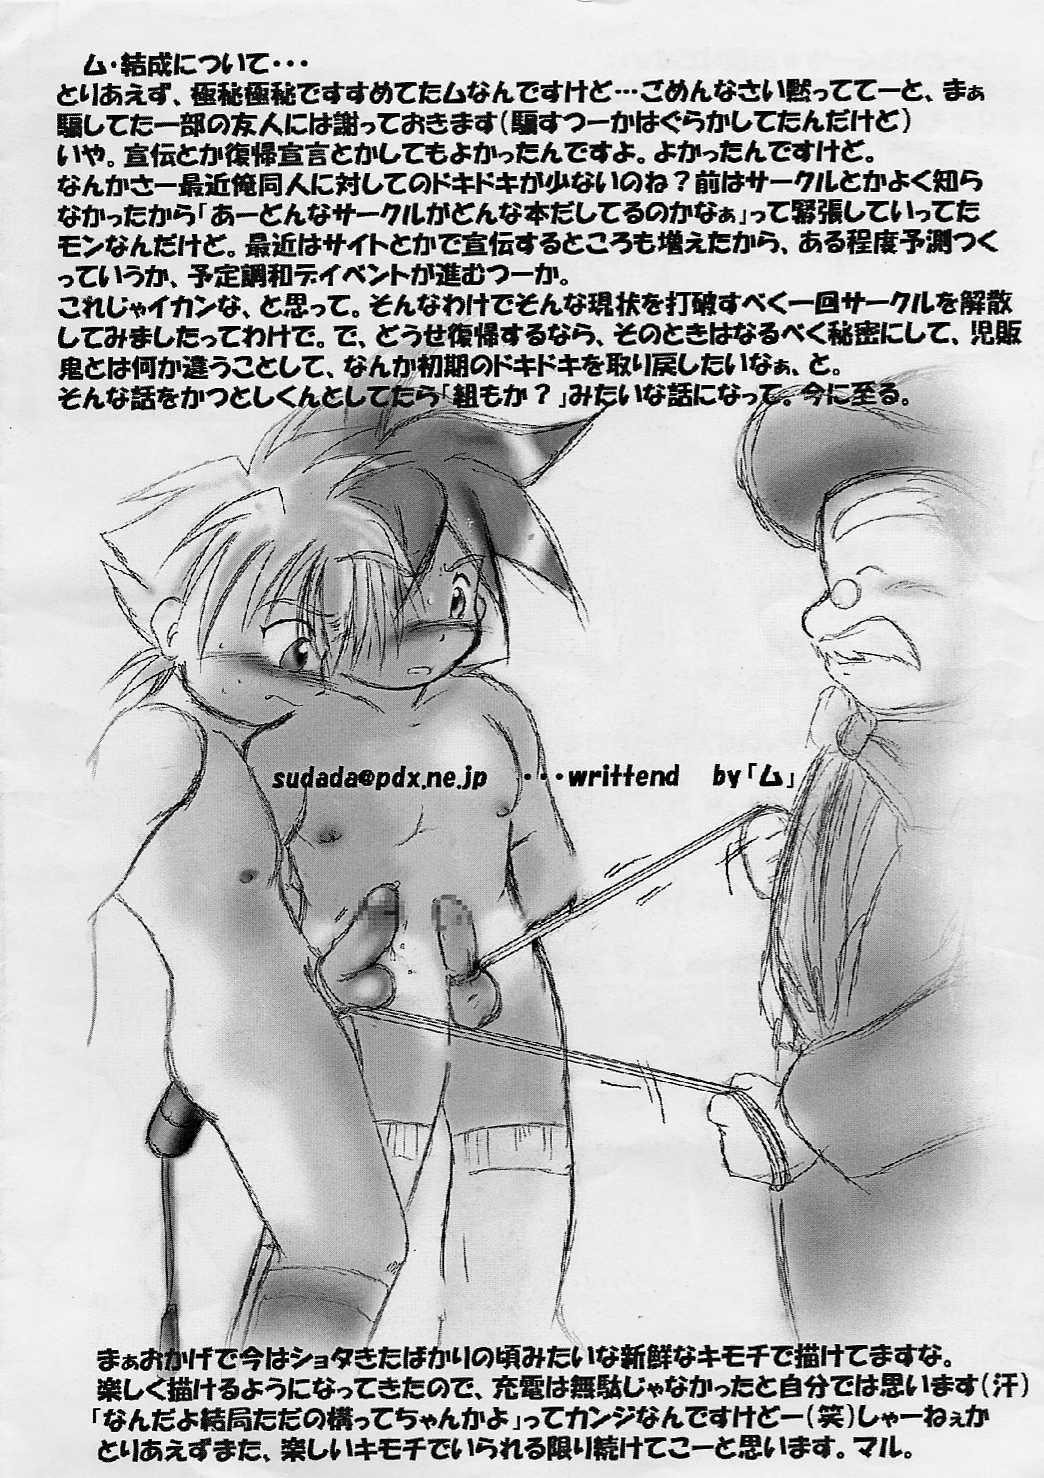  Shotakatsu VOL 1 - Naruto Hunter x hunter Bakusou kyoudai lets and go Rurouni kenshin | samurai x Viet - Page 24